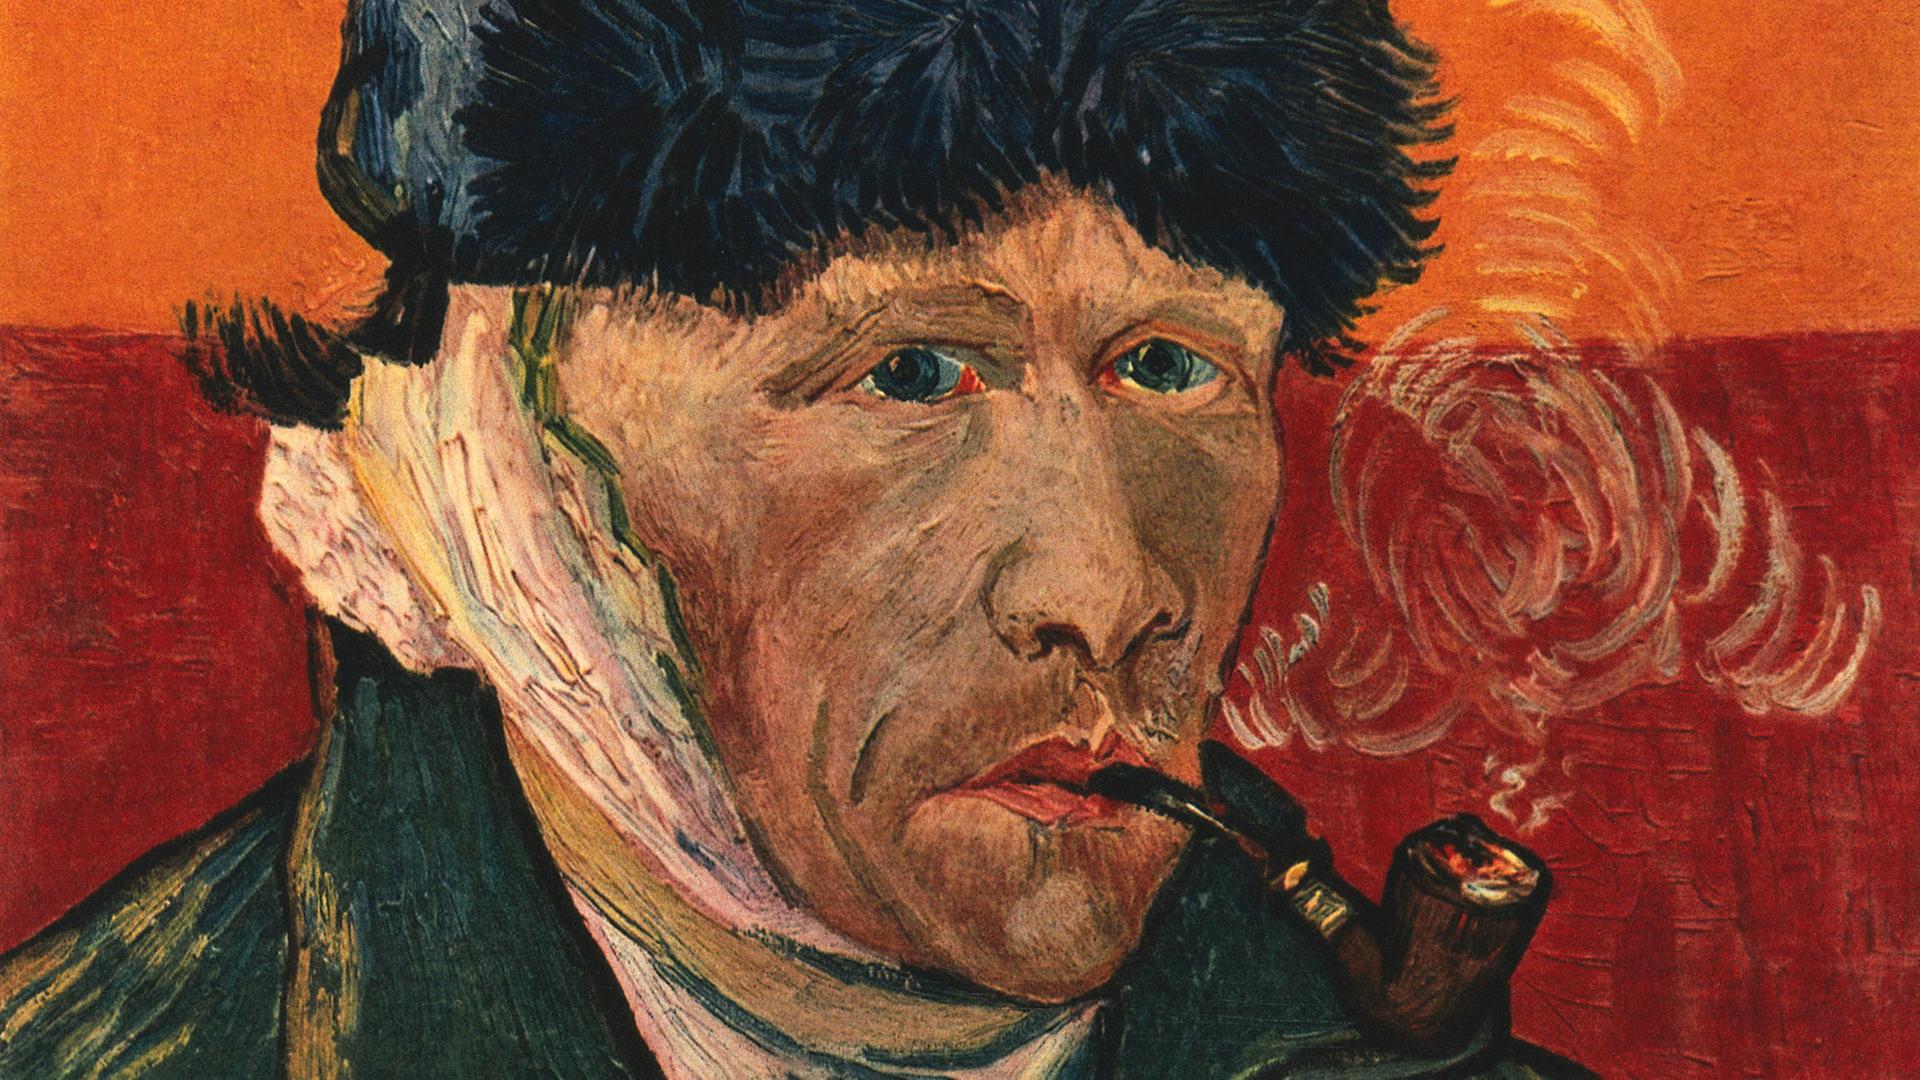 Selbstbildnis des niederländischen Malers Vincent van Gogh. Es trägt den Titel "Selbstbildnis mit Pfeife".